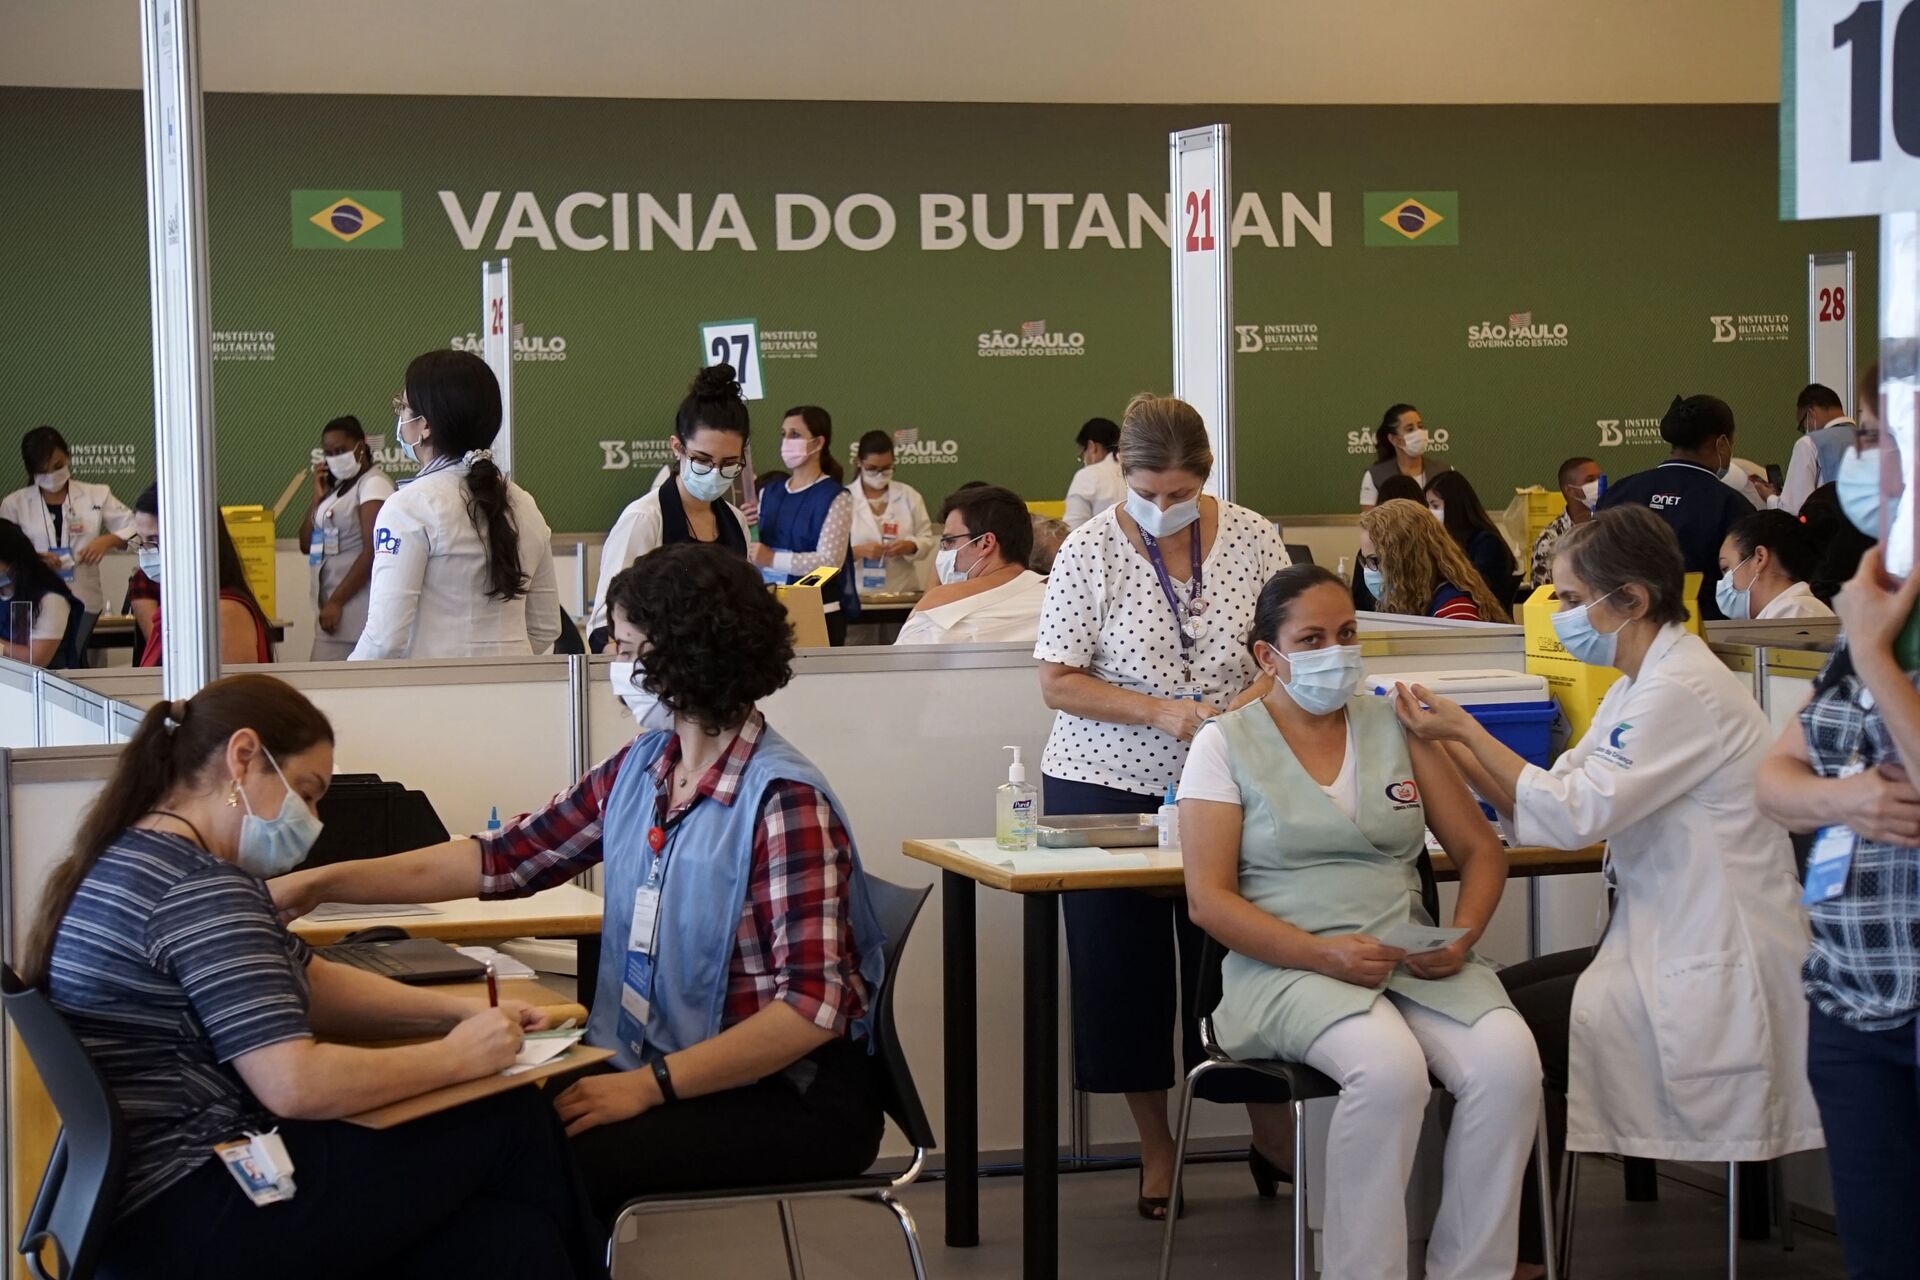 COVID-19: 'Acesso a novas vacinas é urgente no Brasil', diz ex-ministro José Gomes Temporão - Sputnik Brasil, 1920, 02.02.2021